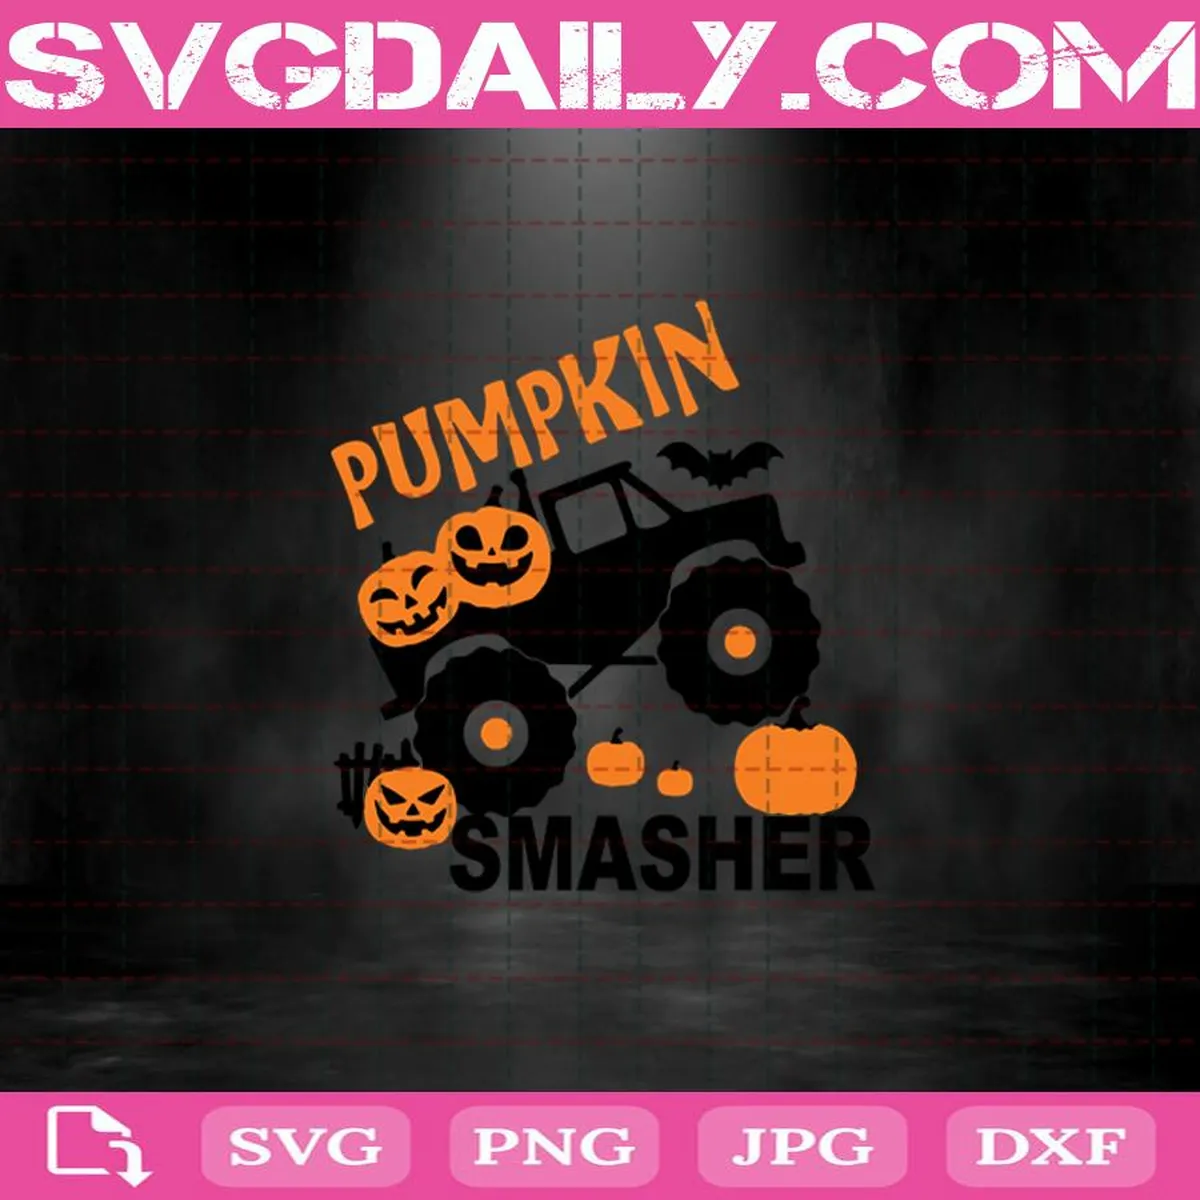 Pumpkin Smasher Svg, Boy Halloween Svg, Pumpkin Monster Truck Svg, Pumpkin Svg, Halloween Svg